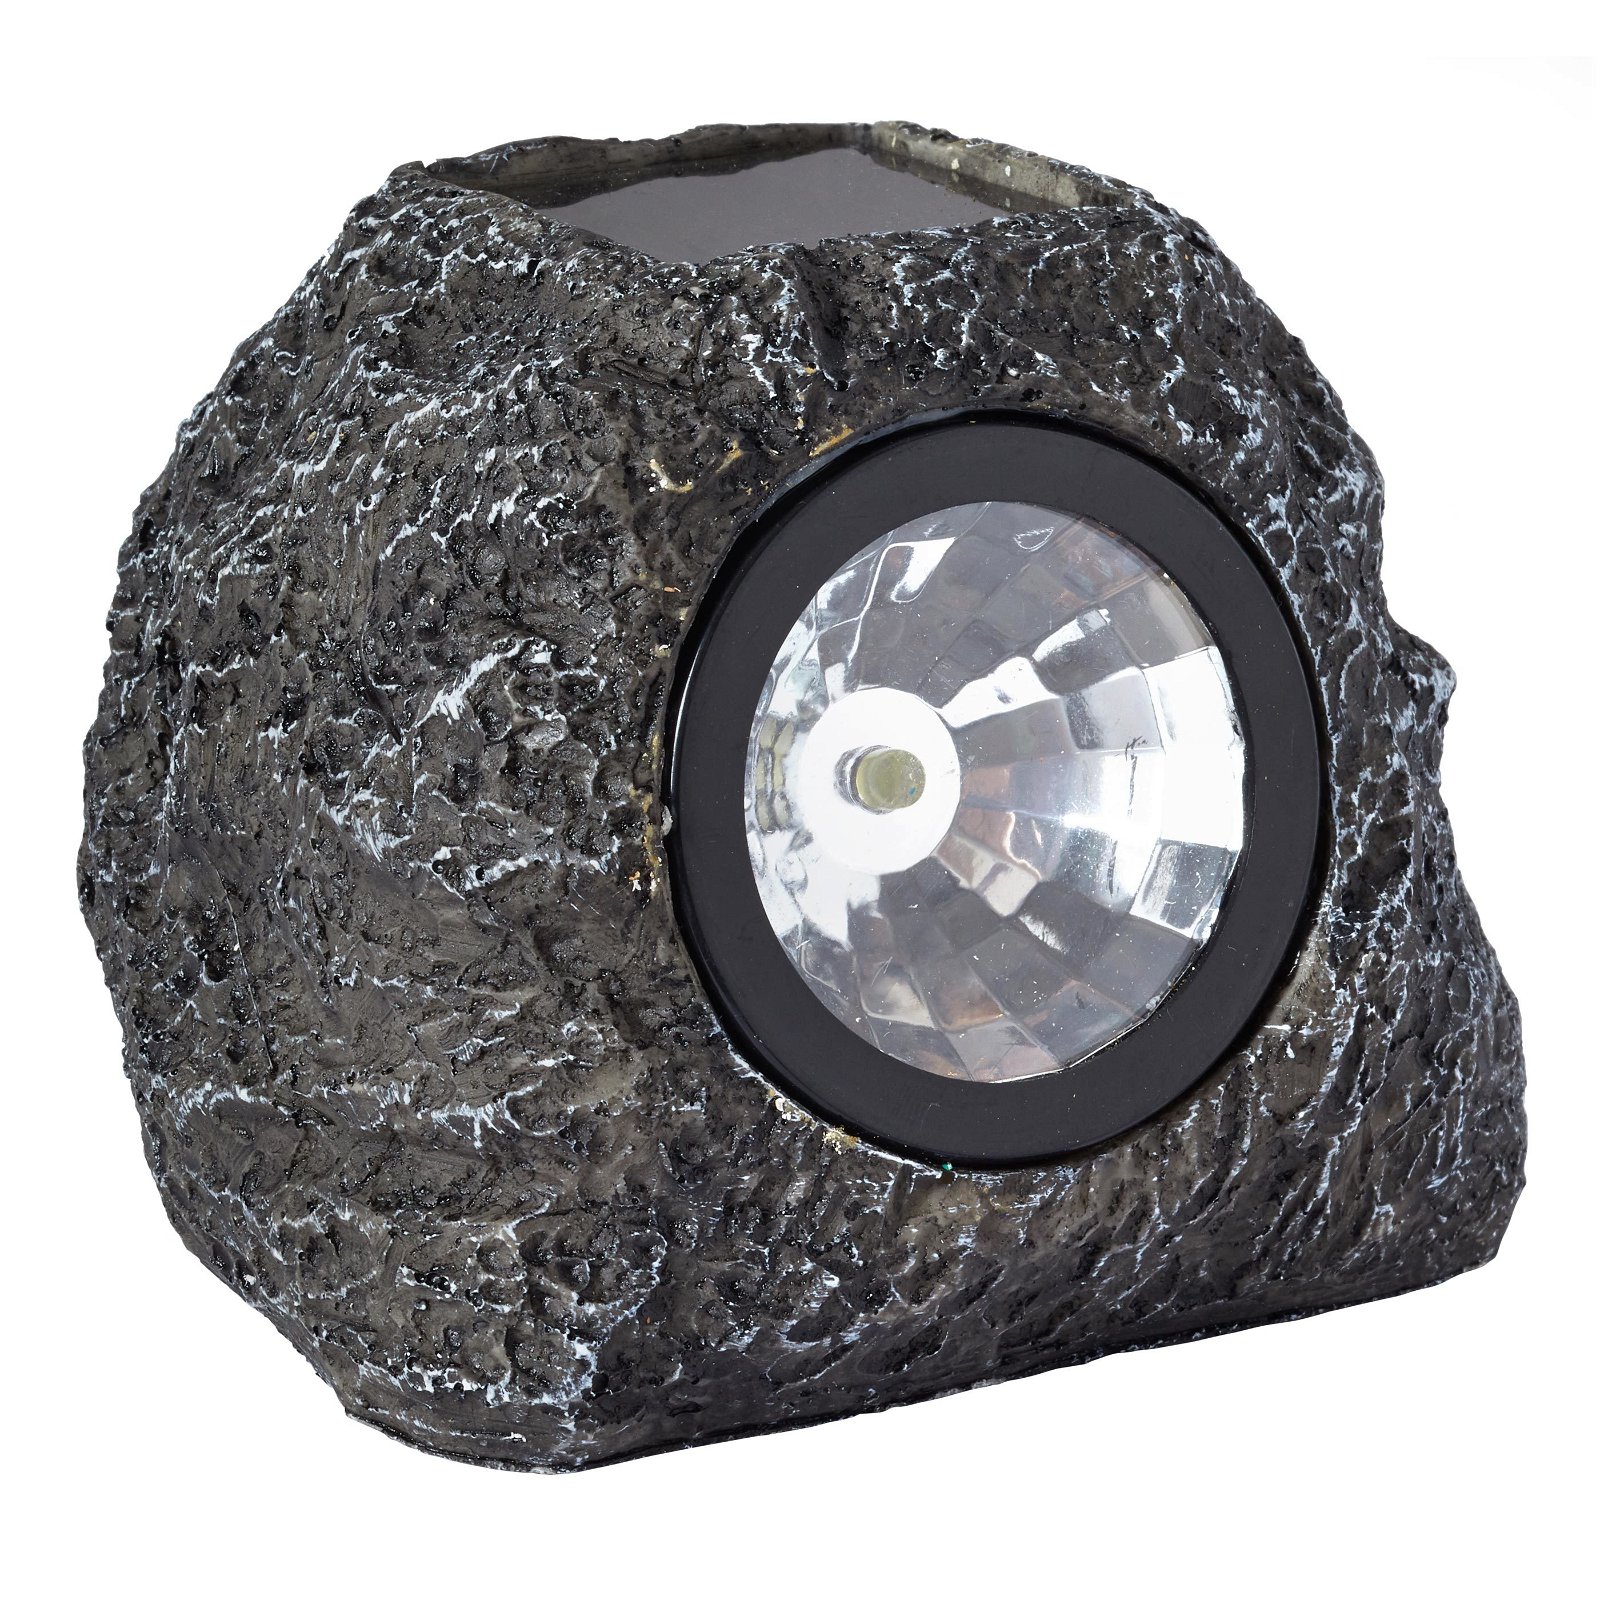 Solar-Leuchte Spotlight in Granit aus Polyresin mit 3 Lumen, Maße 9,5 x 10 cm